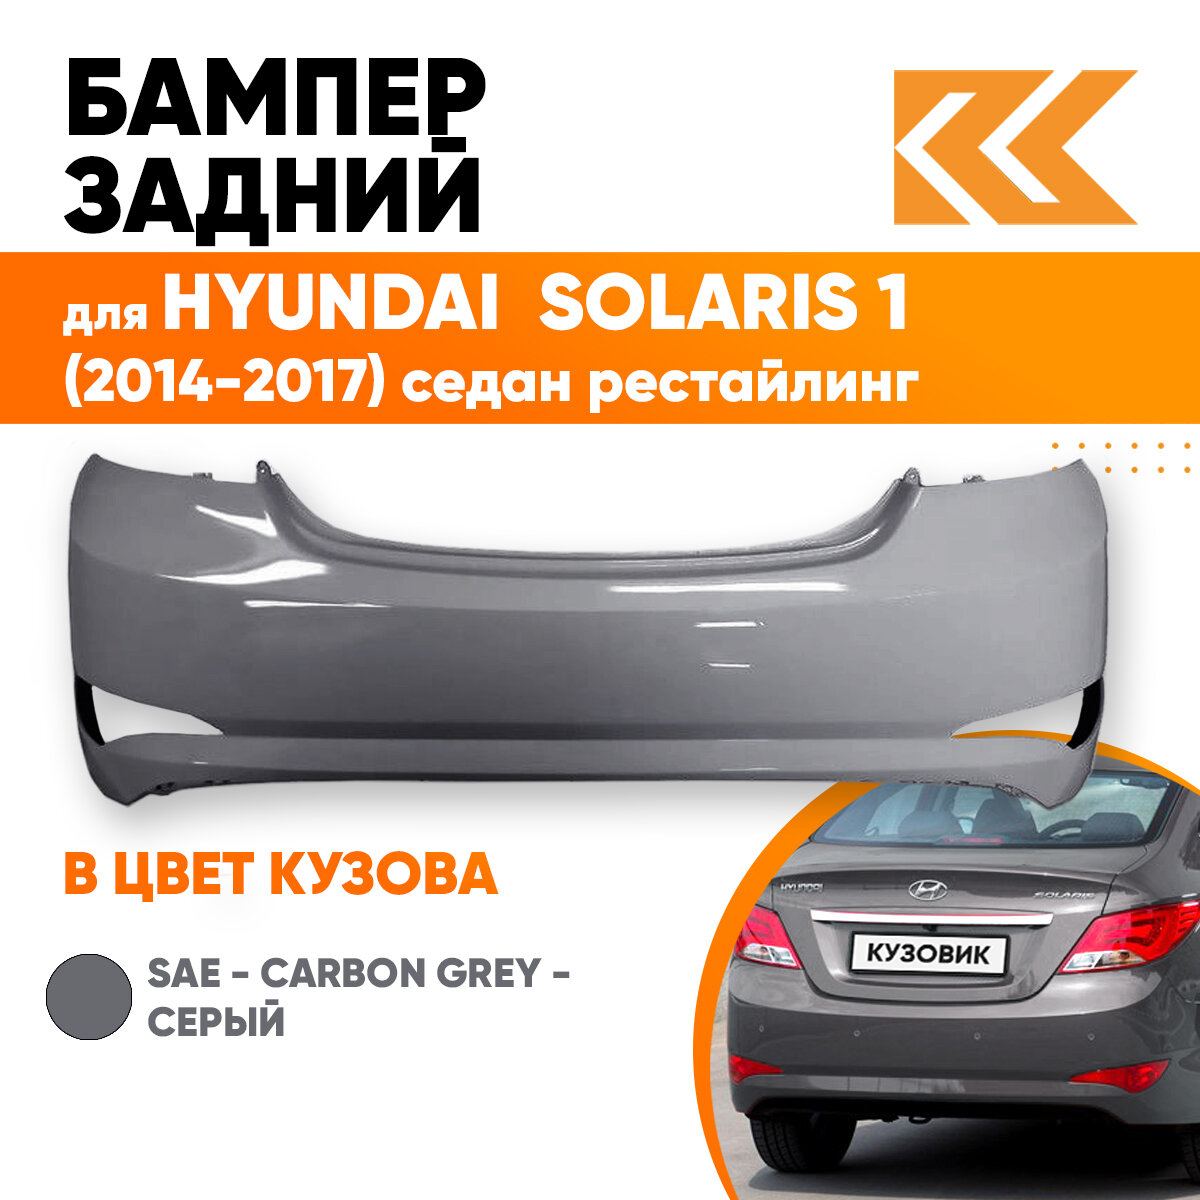 Бампер задний в цвет Hyundai Solaris (2014-2017) седан рестайлинг SAE - CARBON GREY - Серый